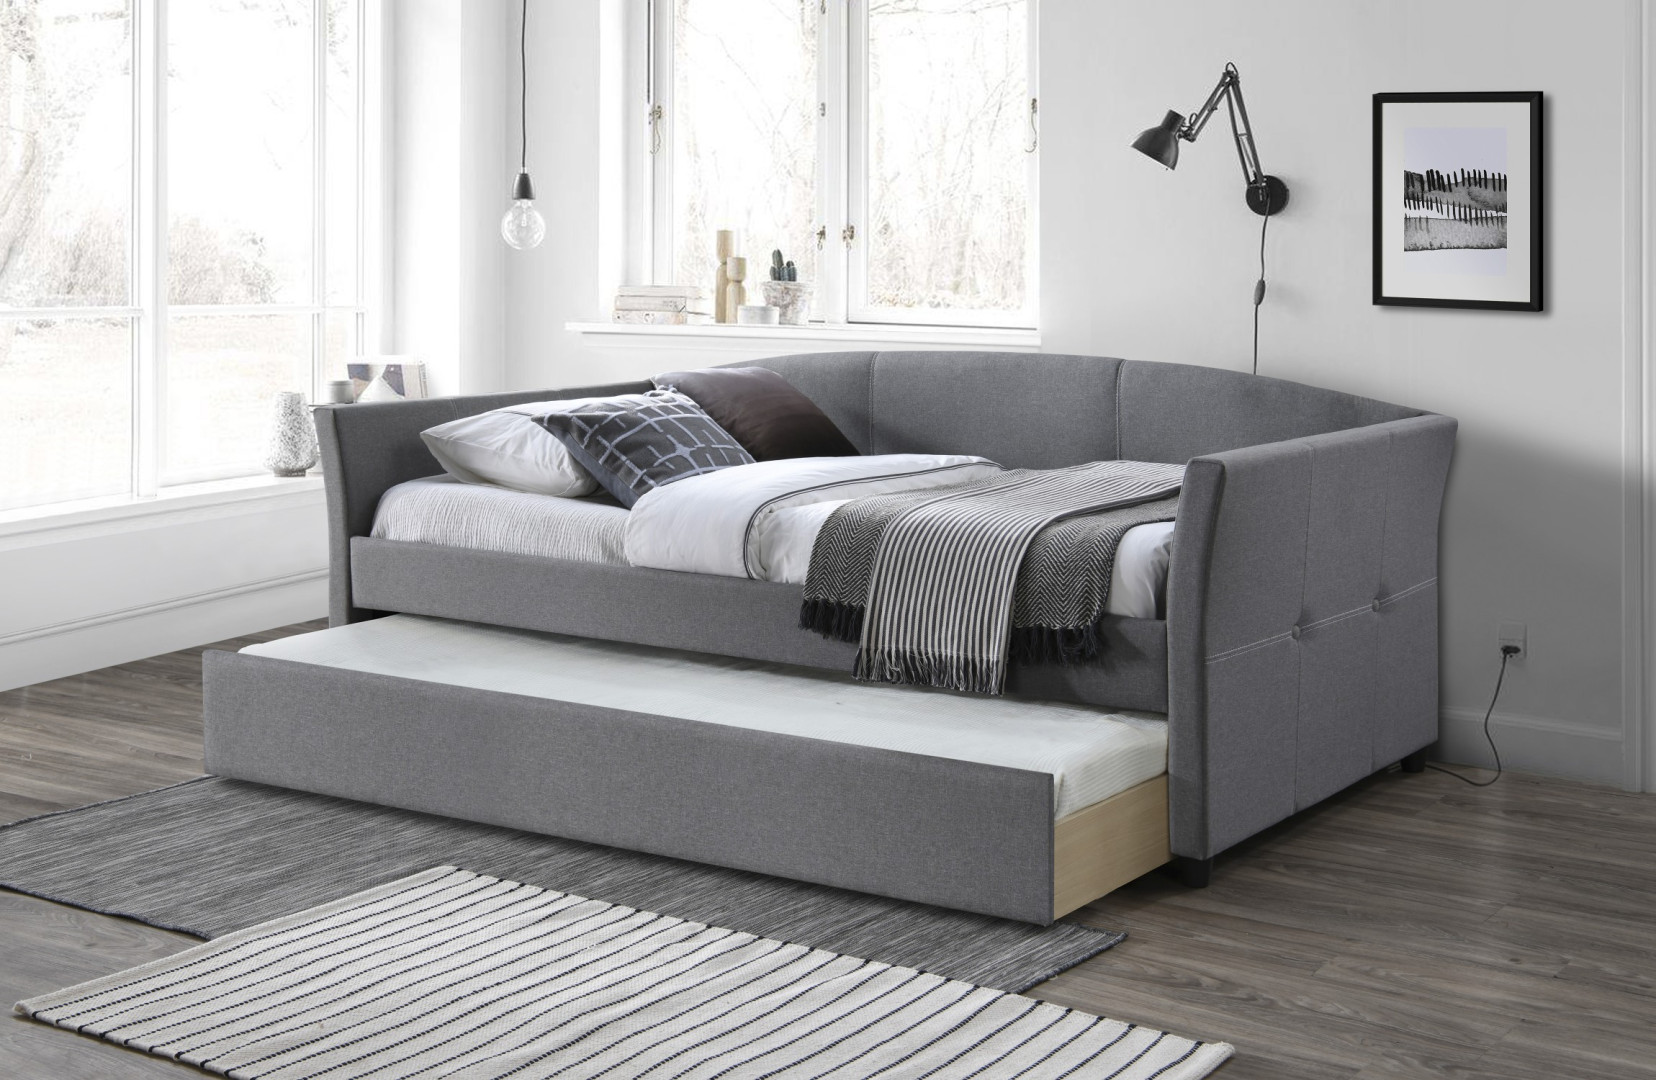 Produkt w kategorii: Łóżka, nazwa produktu: Łóżko Sanna - eleganckie wygodne łóżko